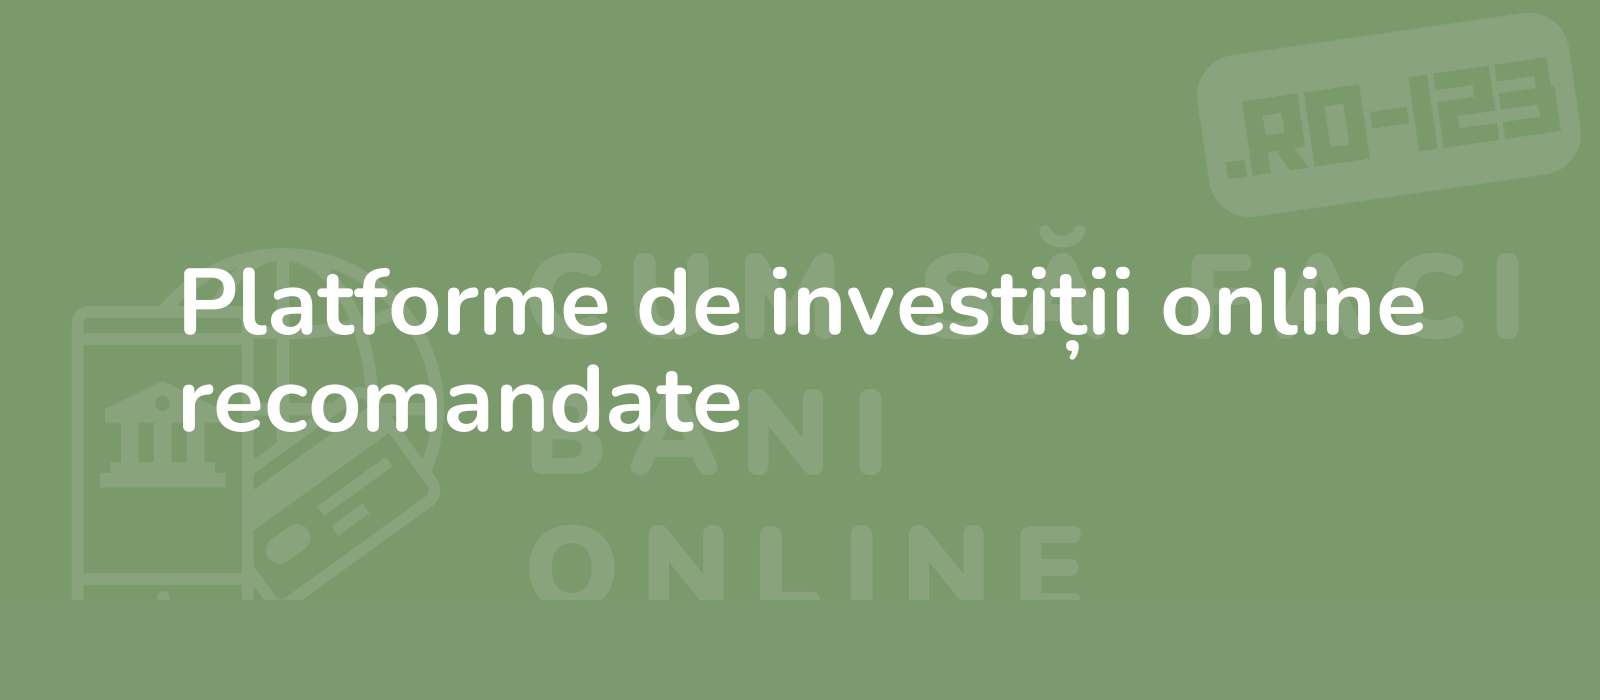 Platforme de investiții online recomandate